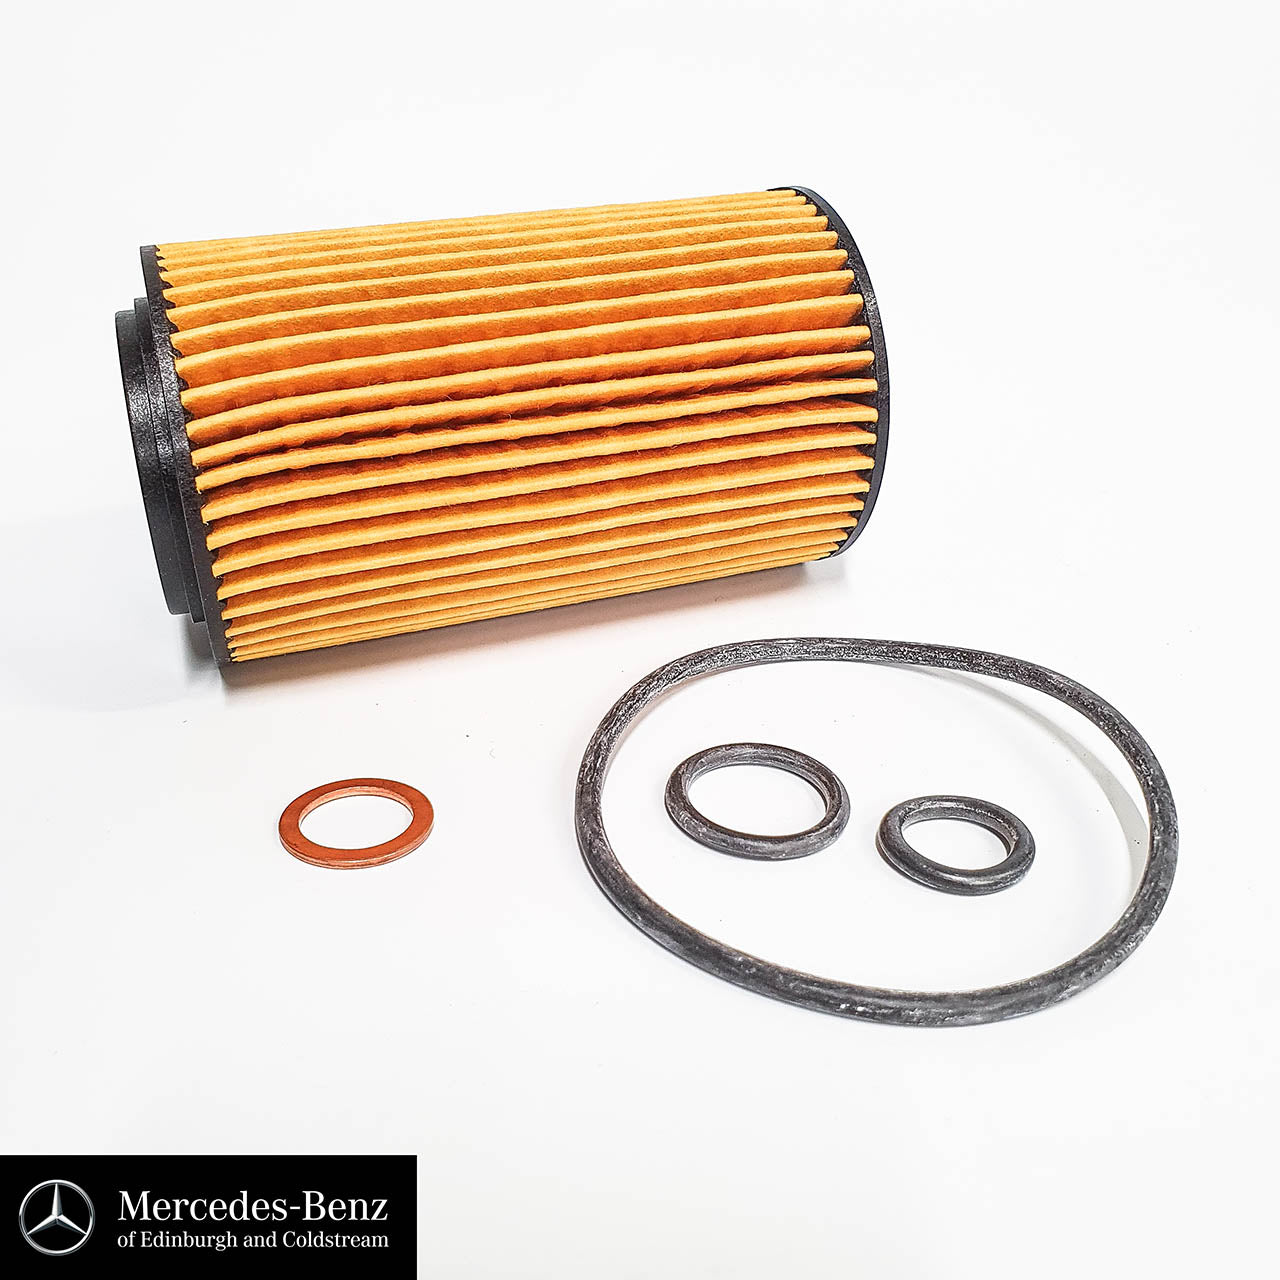 Genuine Mercedes-Benz service kit for OM651 Diesel Engine